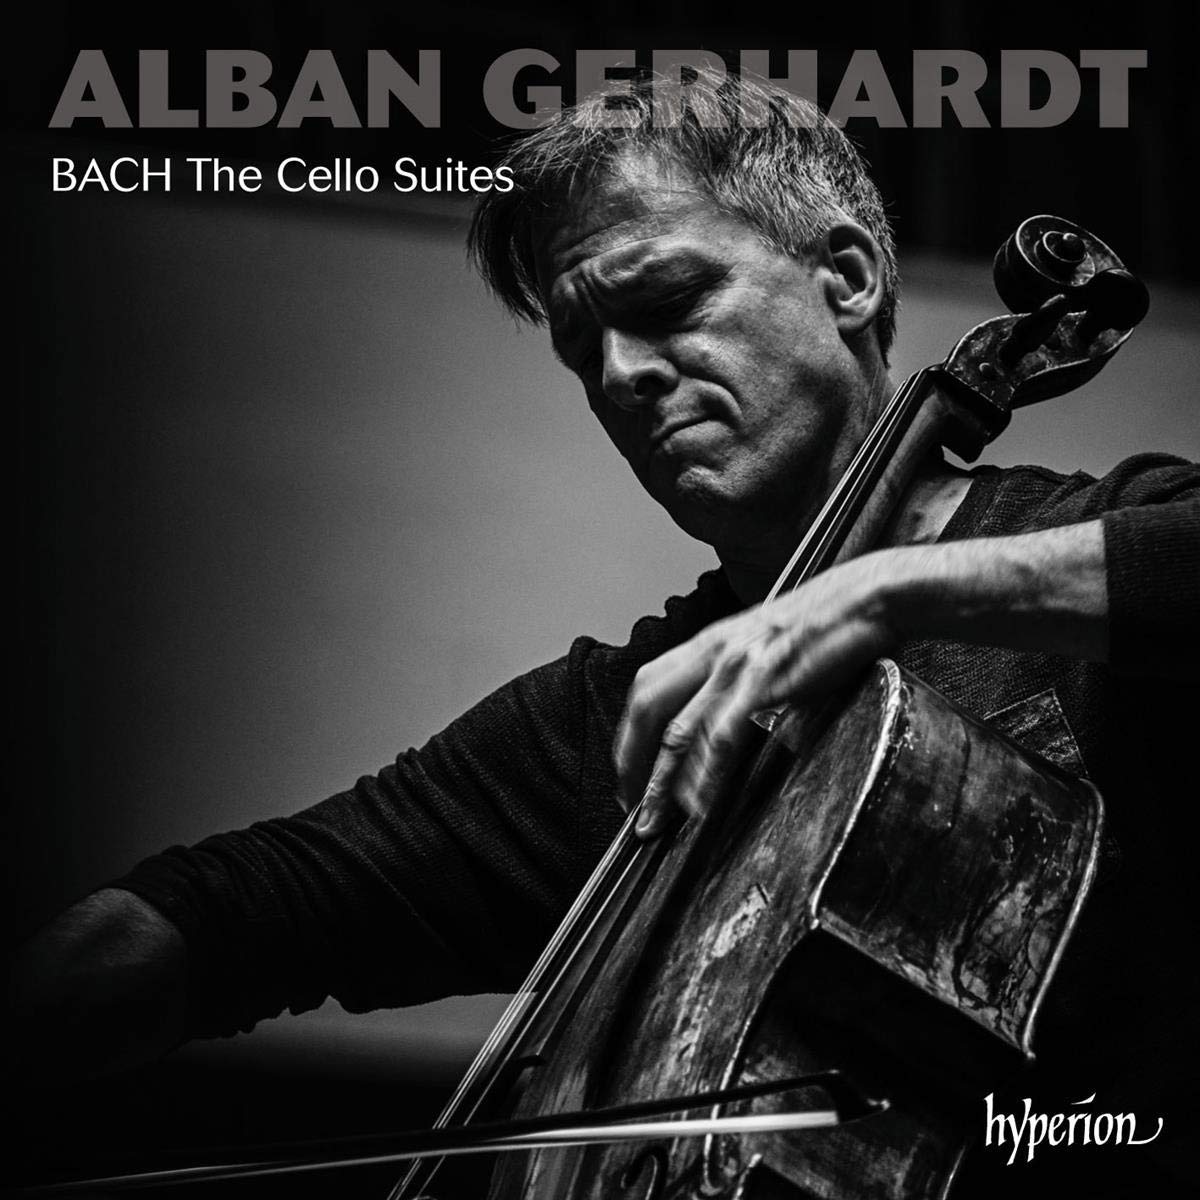 Gerhardt's Bach